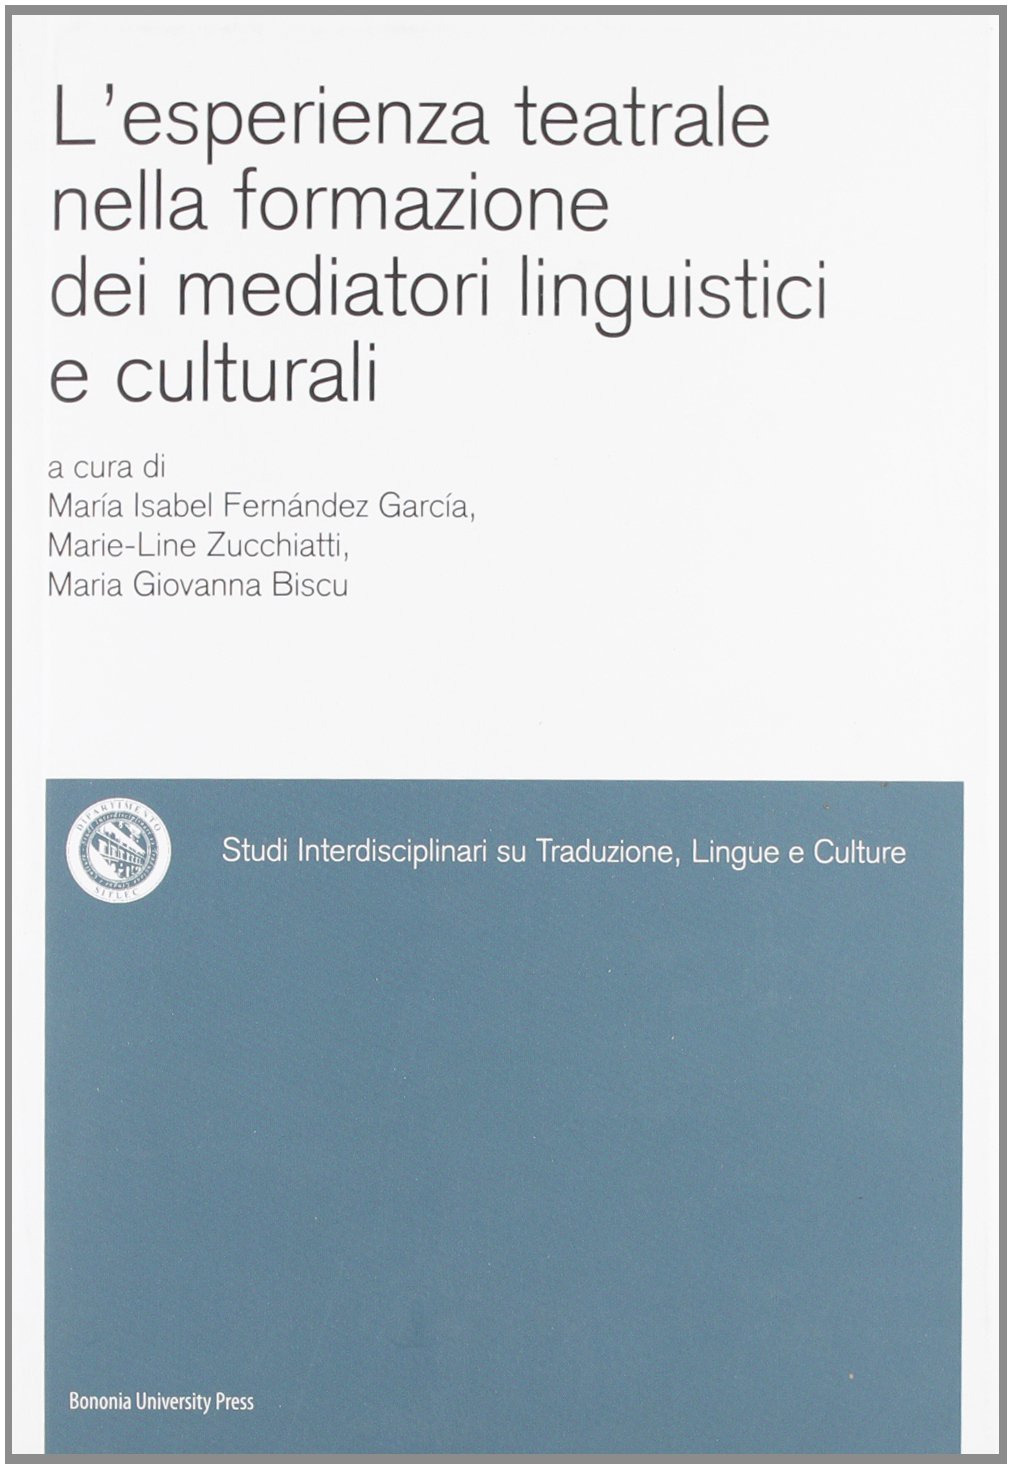 L'esperienza teatrale nella formazione dei mediatori linguistici e culturali - Bologna University Press